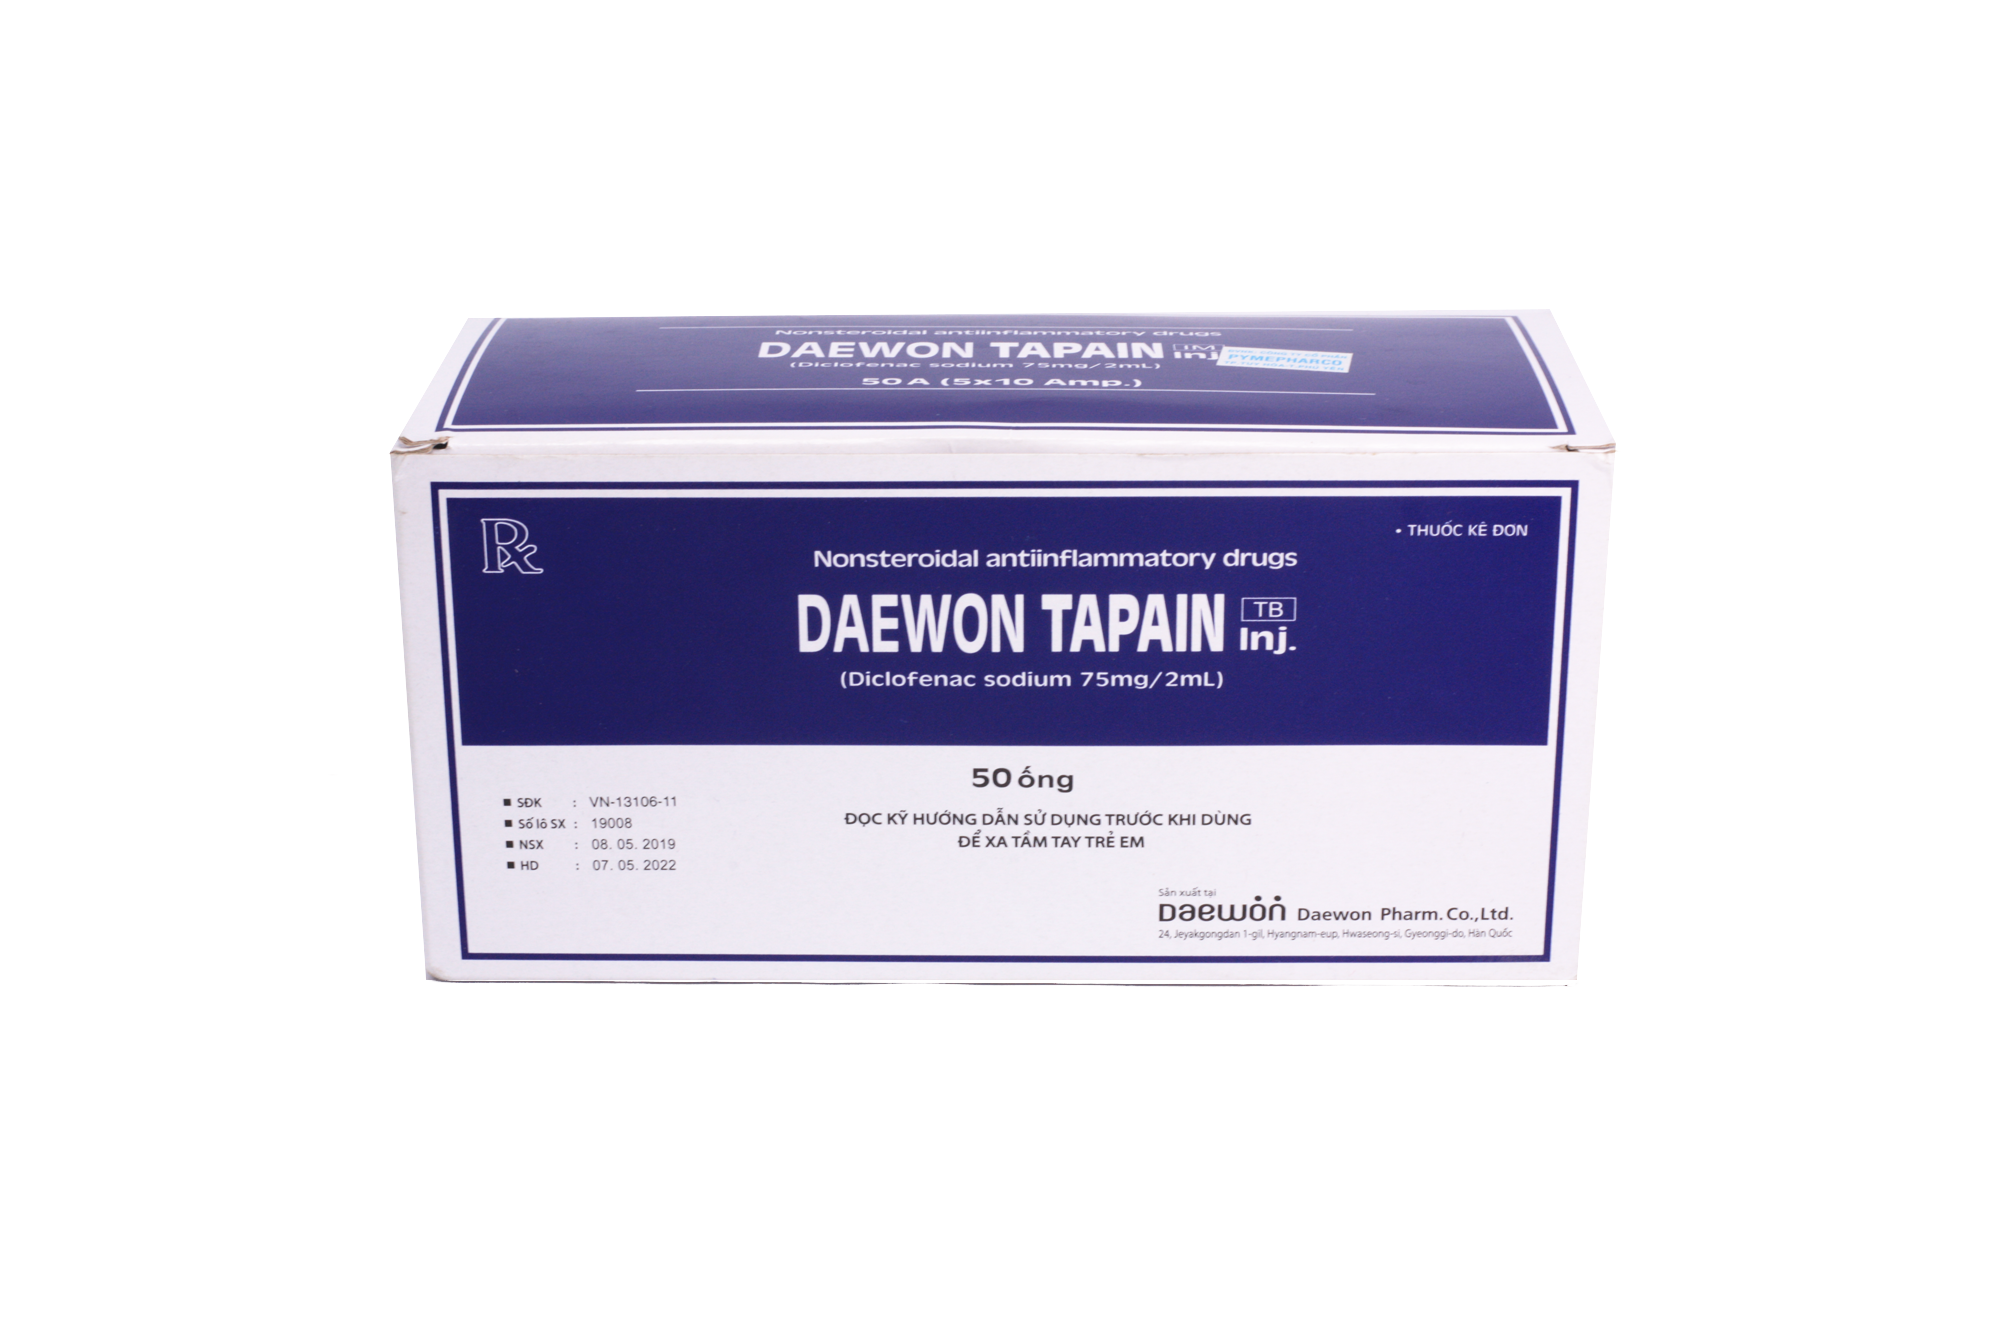 Daewon Tapain (Diclofenac) 75mg/2ml Korea (H/50 ống/2ml)